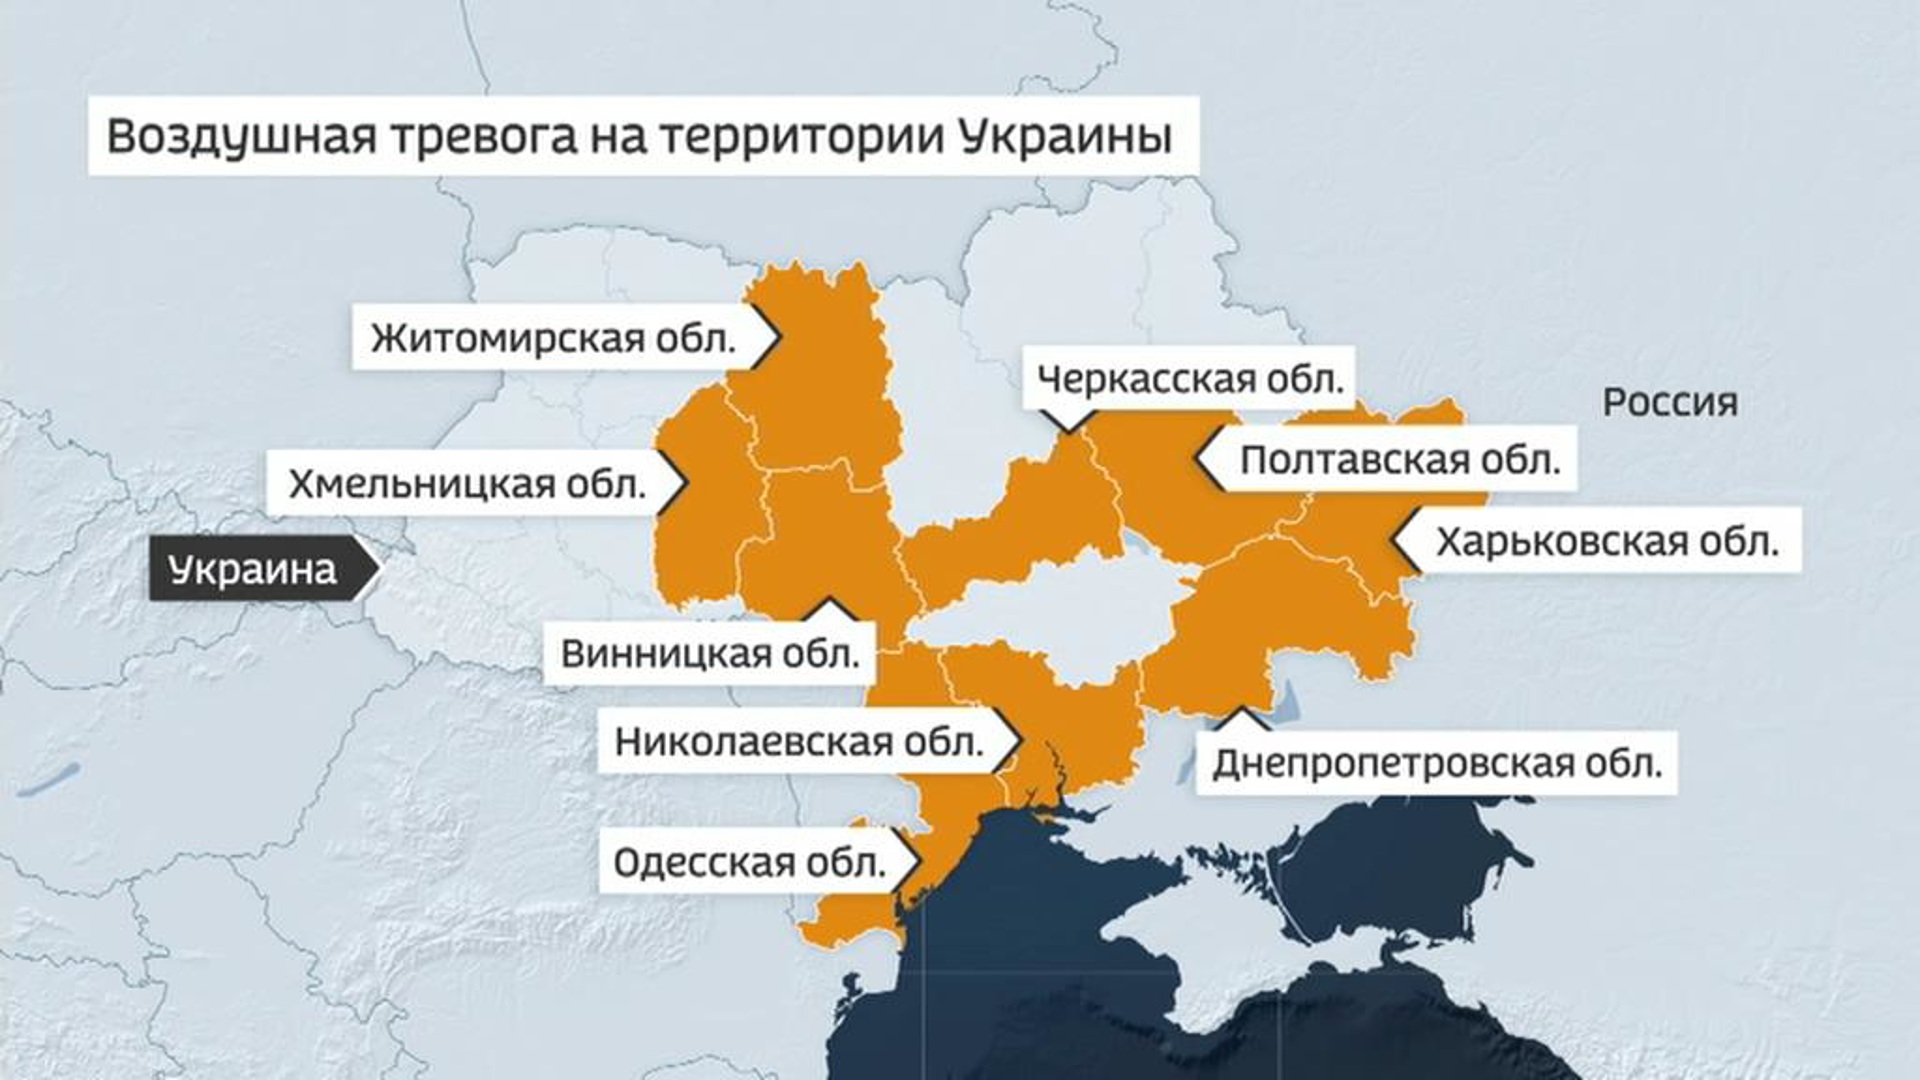 Карта тревог в украине сейчас. Воздушная тревога на Украине. Воздушная тревога на территории Украины. Карта воздушных тревог в Украине. Карта воздушных тревог на Украине сейчас.